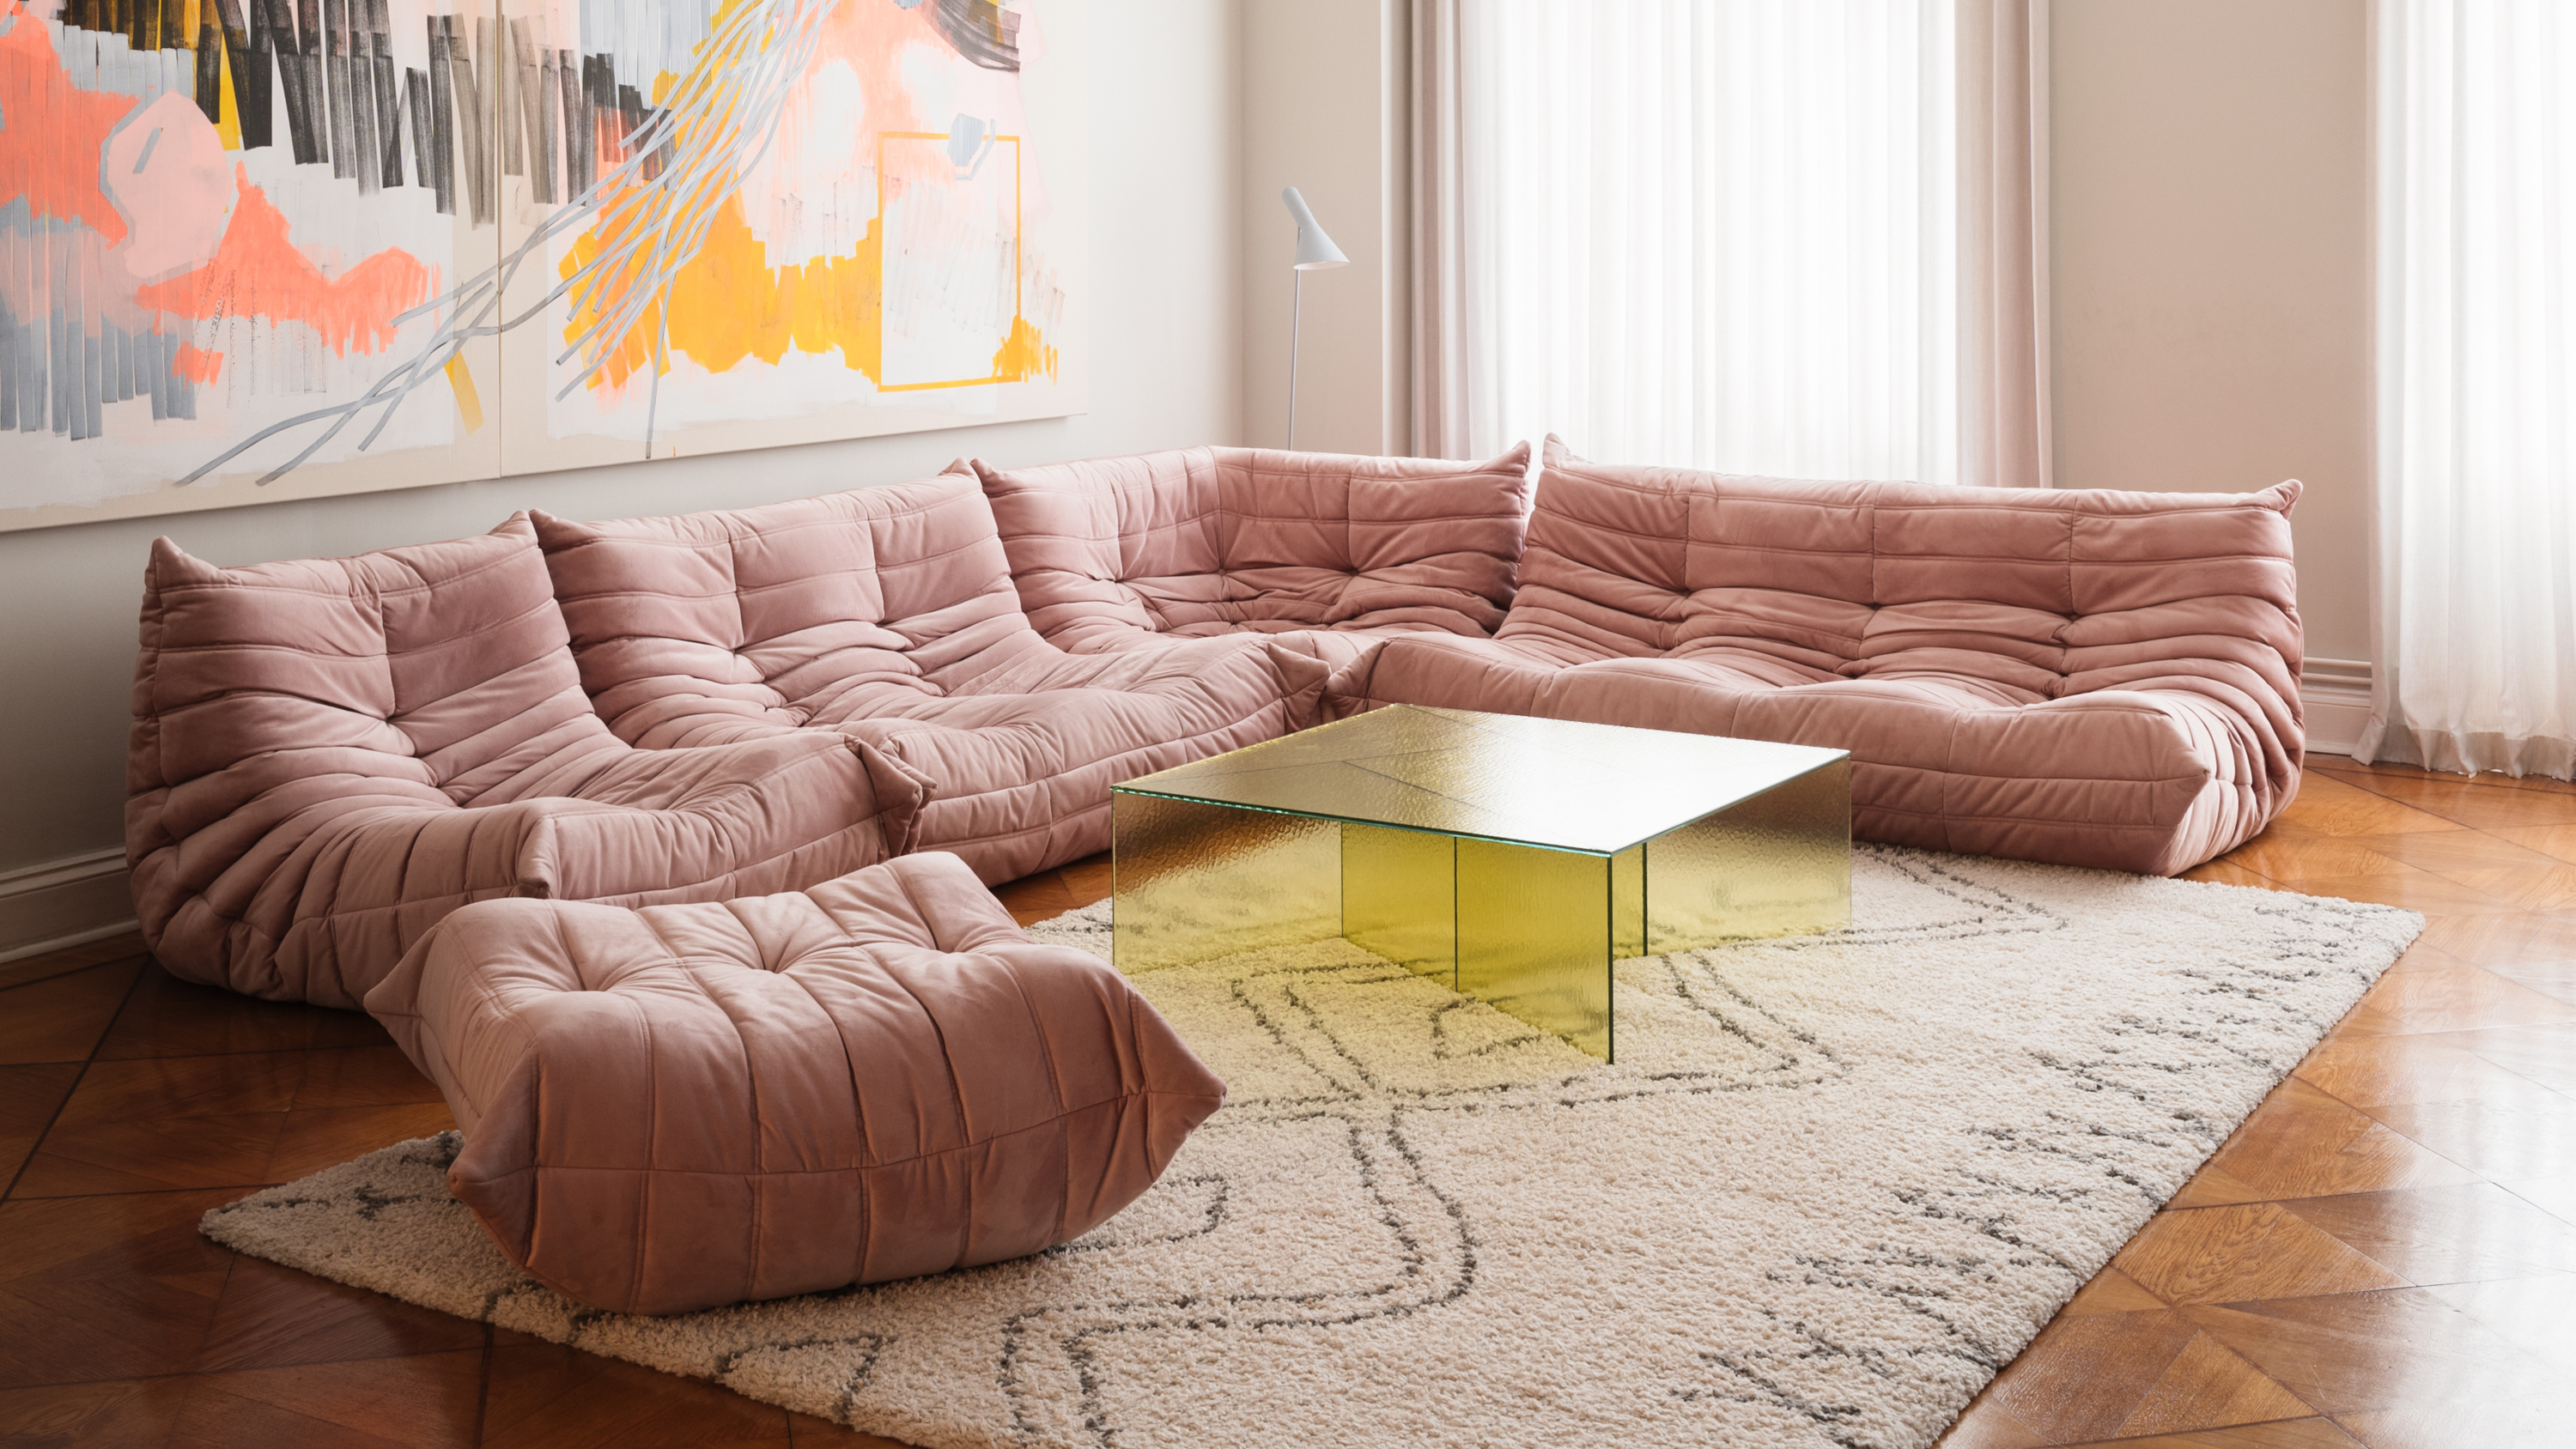 Comfy Cloud Sofa, ALTER design studio